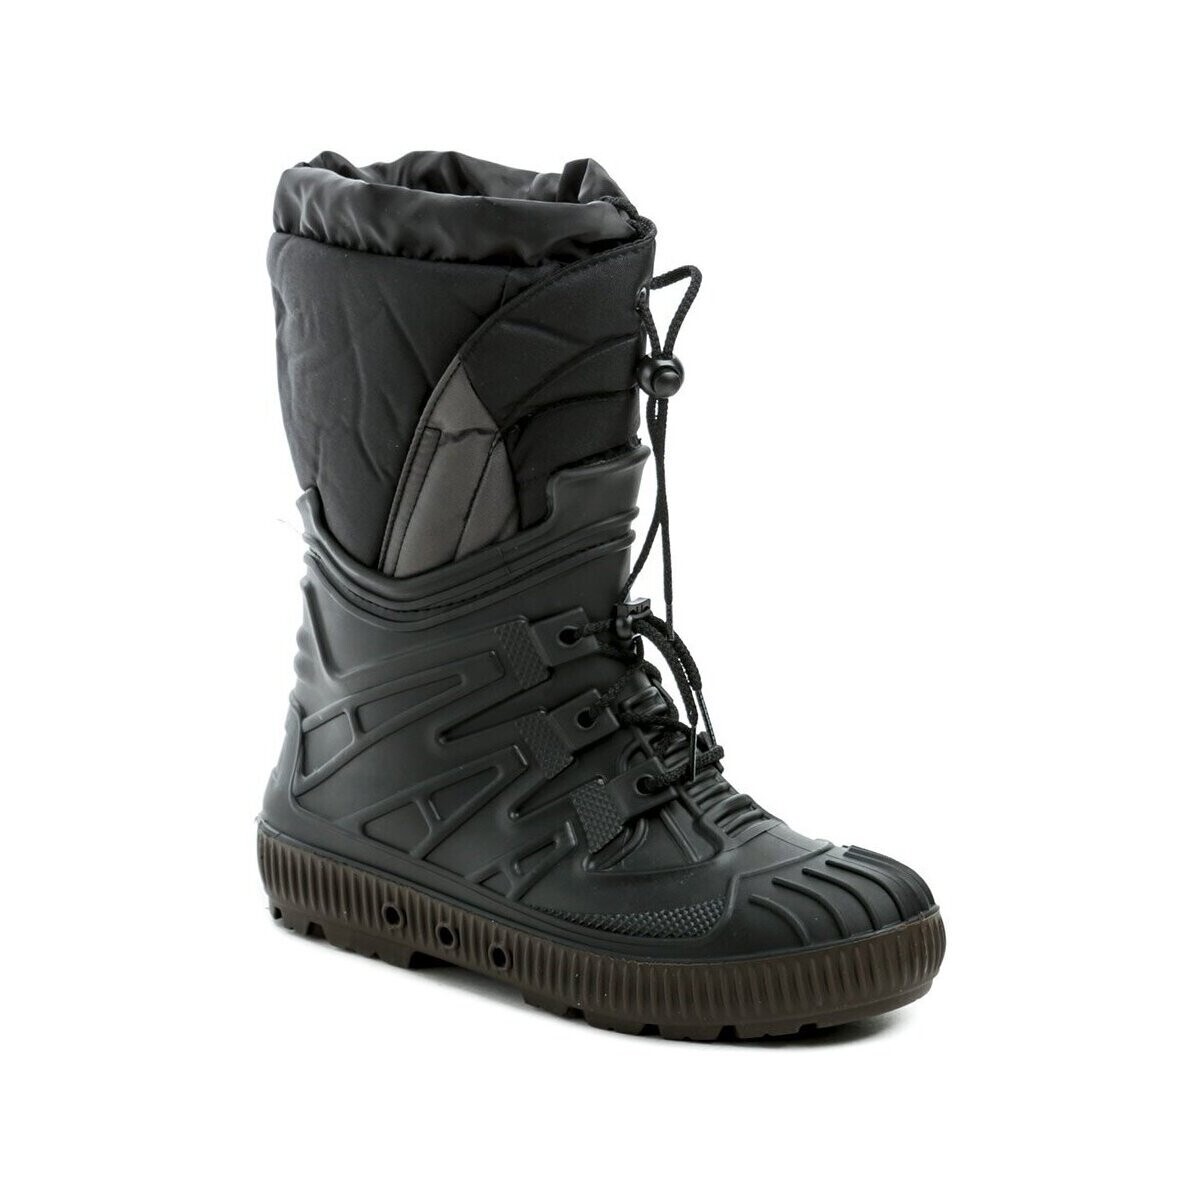 Boty Muži Zimní boty Italy Top Lux 9403 černé pánské sněhule Černá